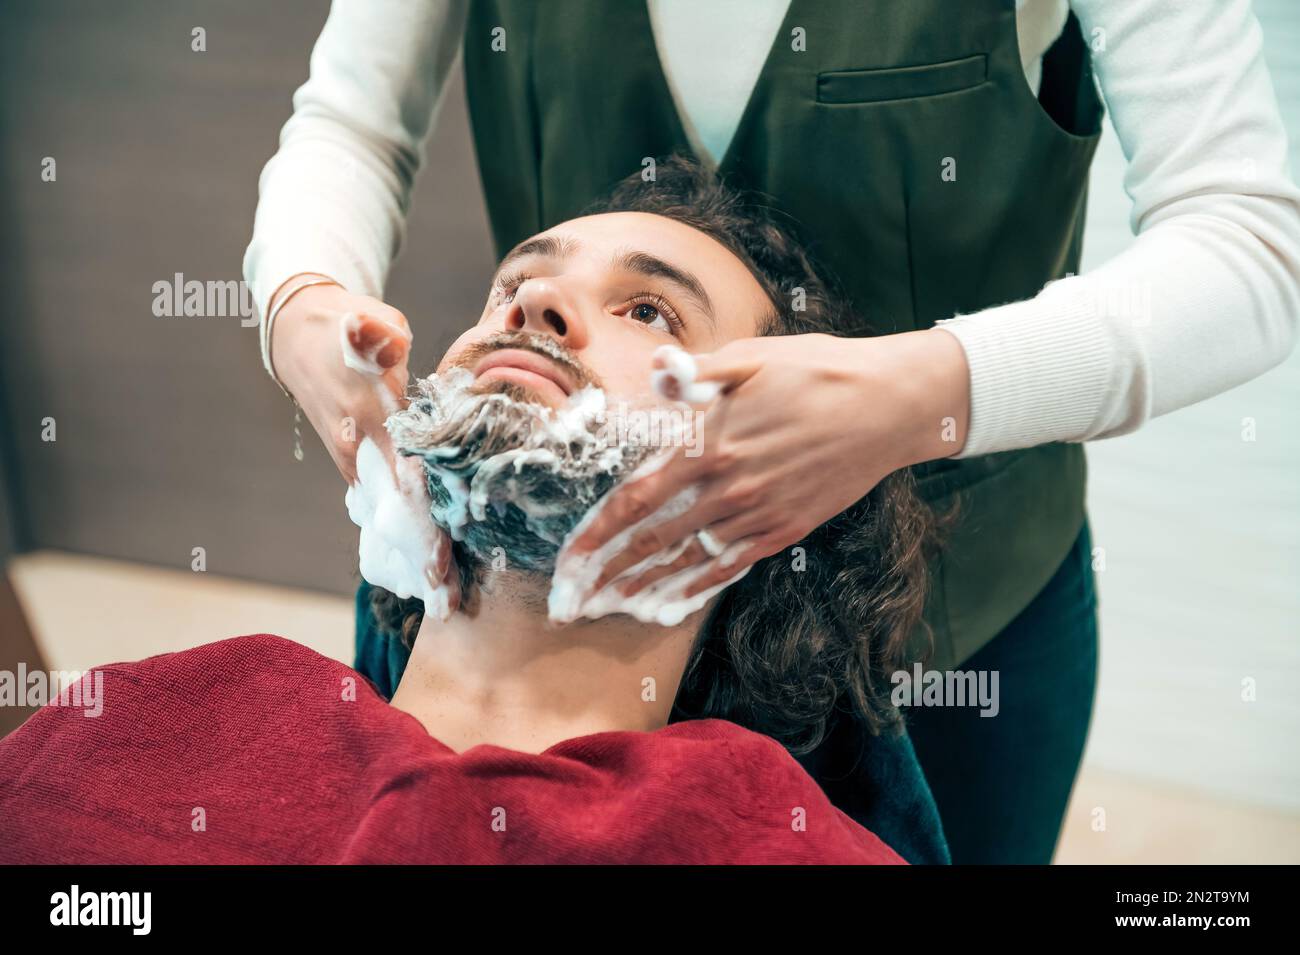 Alto ángulo de corte barbero femenino en uniforme aplicando jabón en la barba de los clientes mientras se prepara para el procedimiento de corte en la barbería profesional Foto de stock